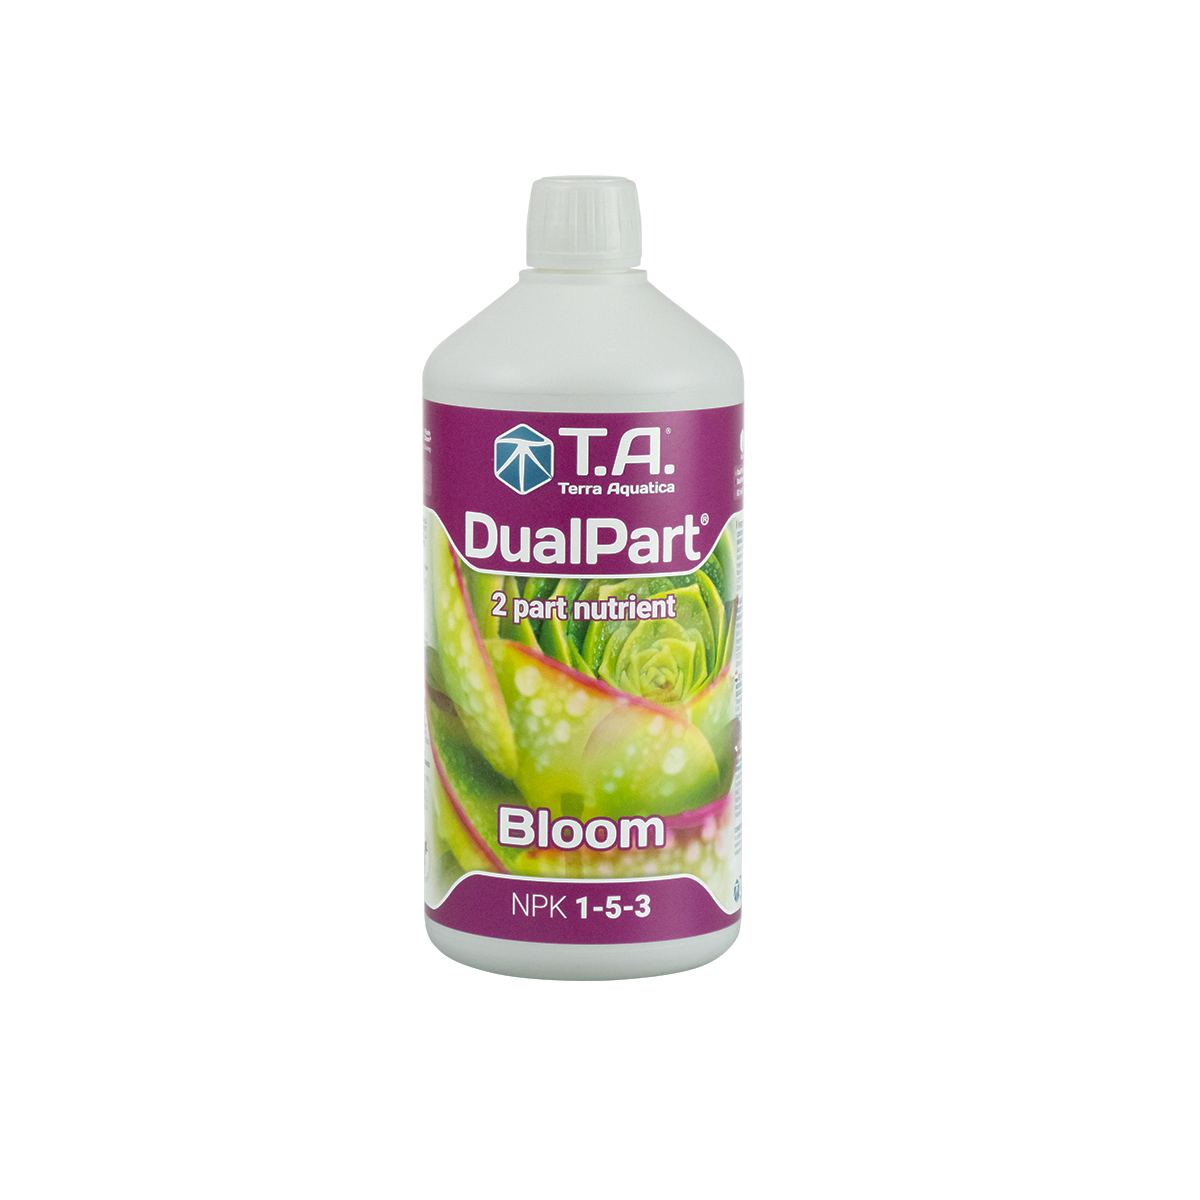 Dualpart bloom 1 litre